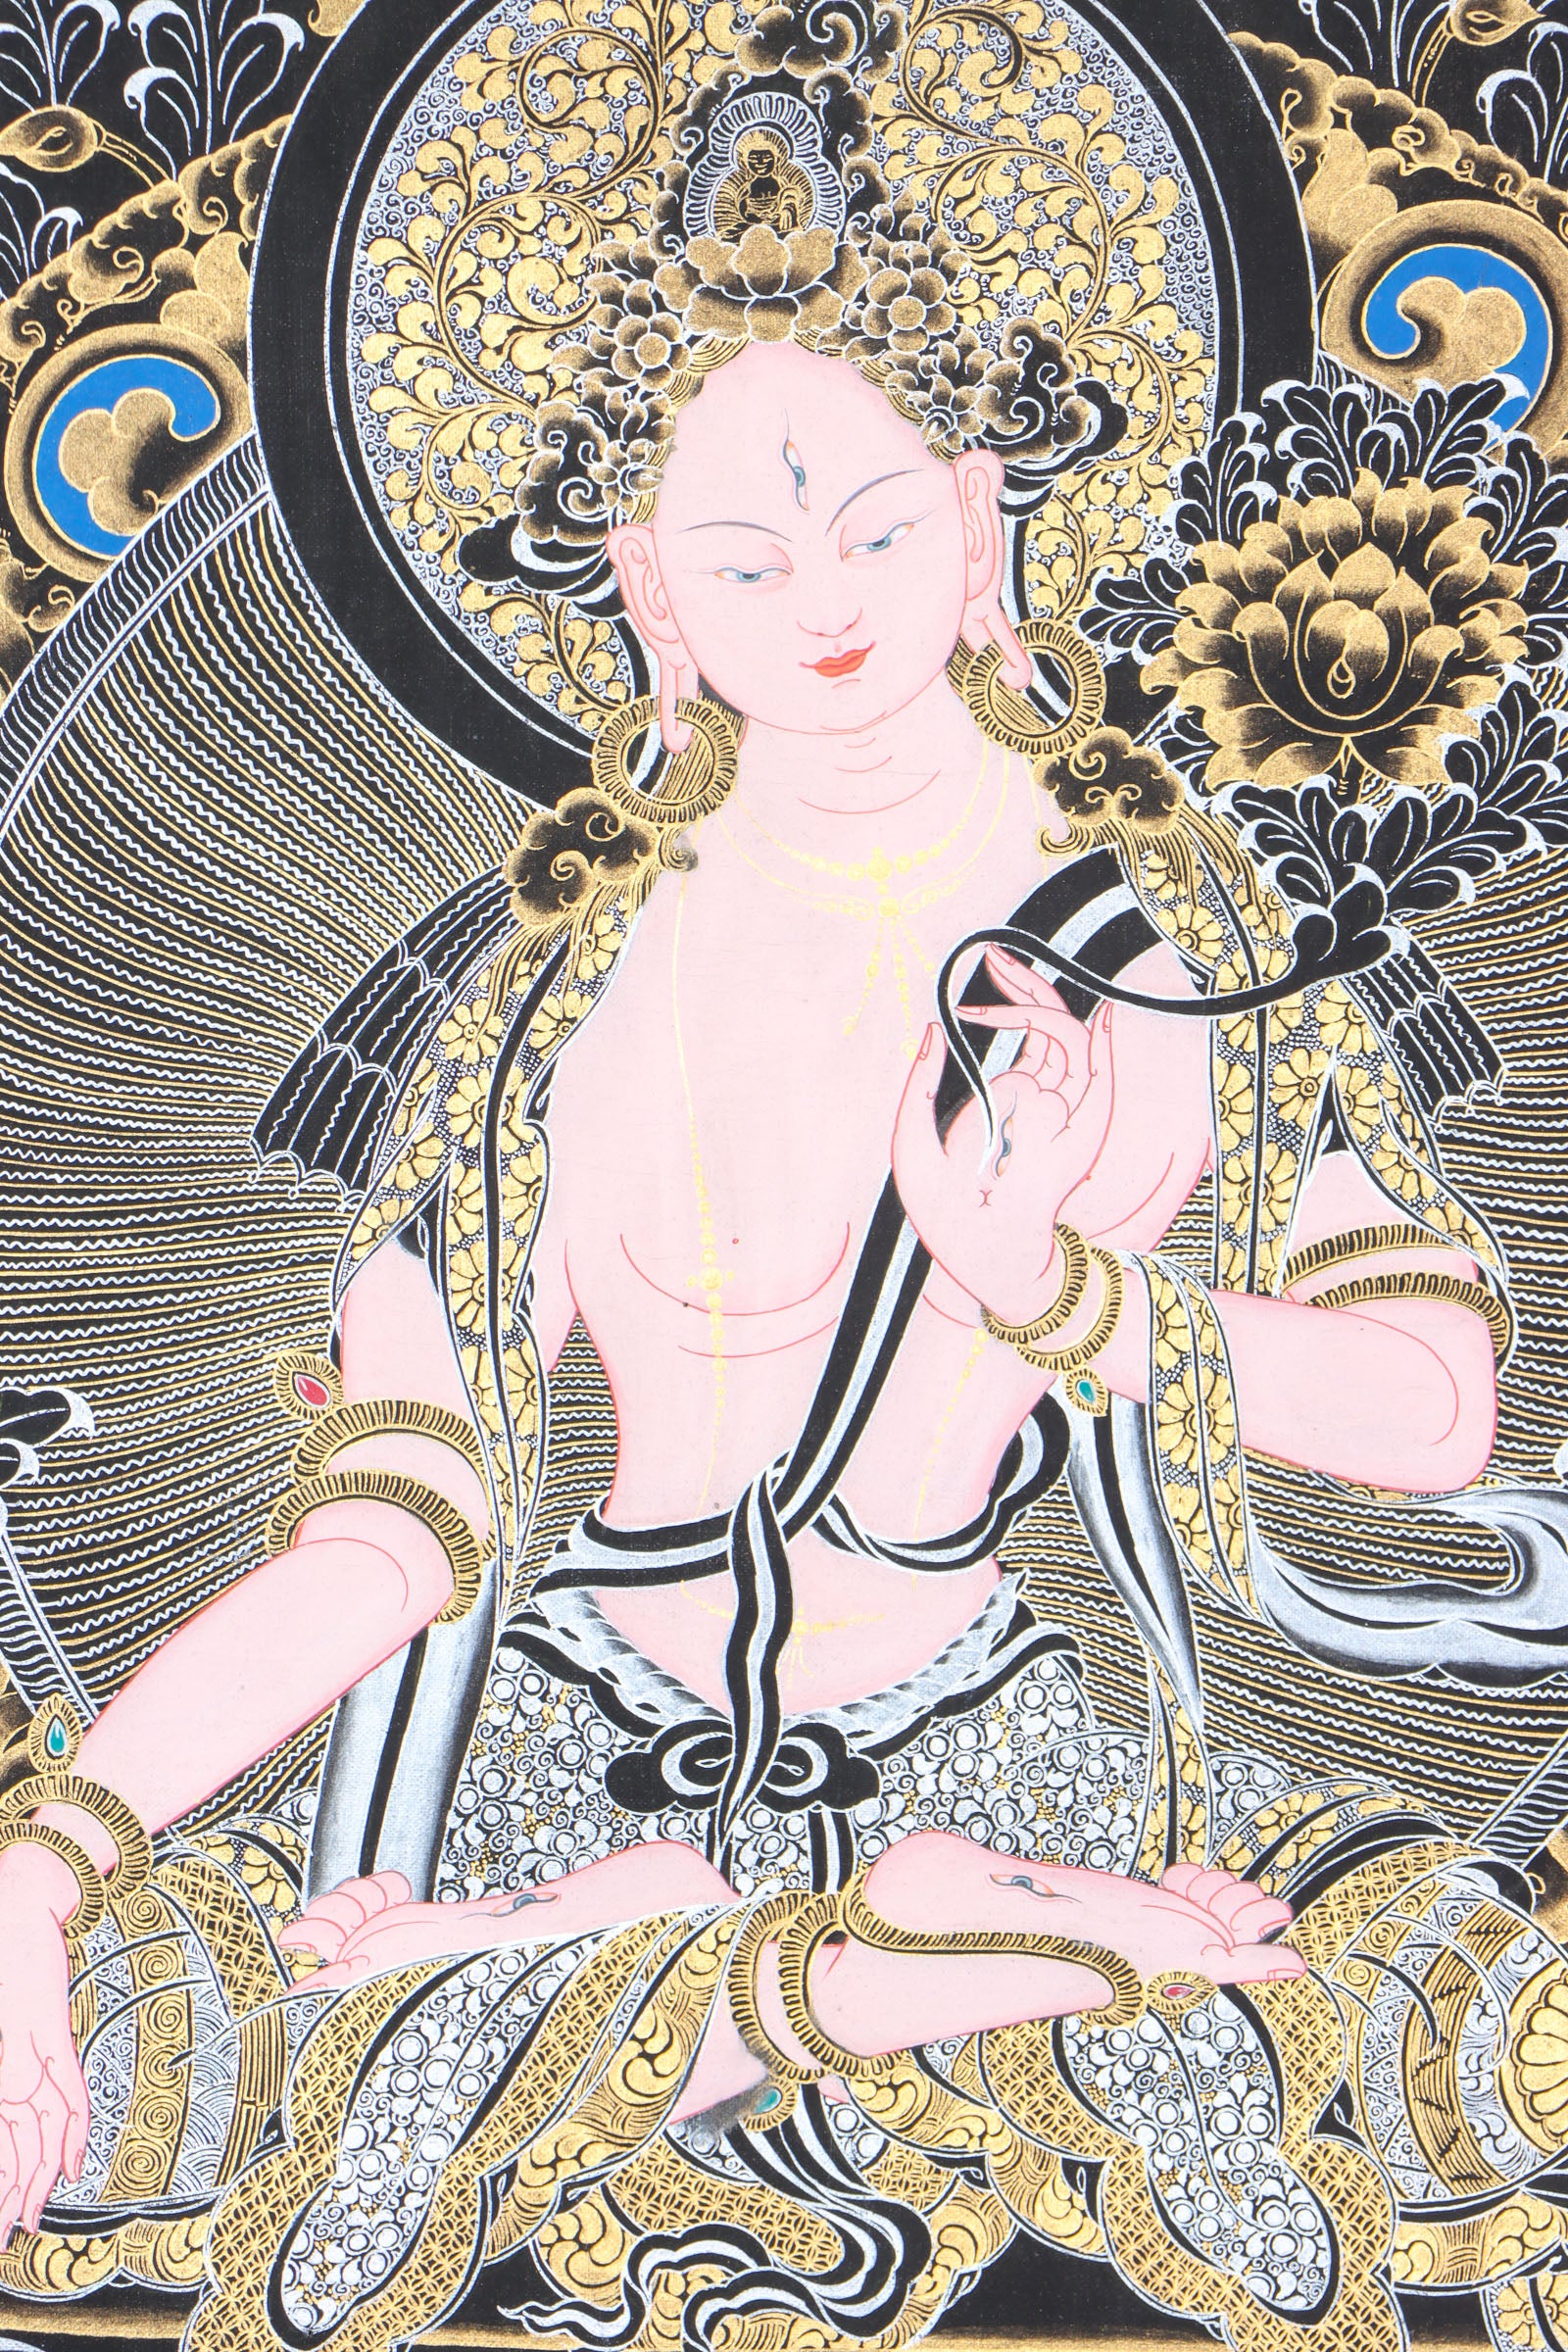 White Tara Thangka for guidance and blessings for long life.